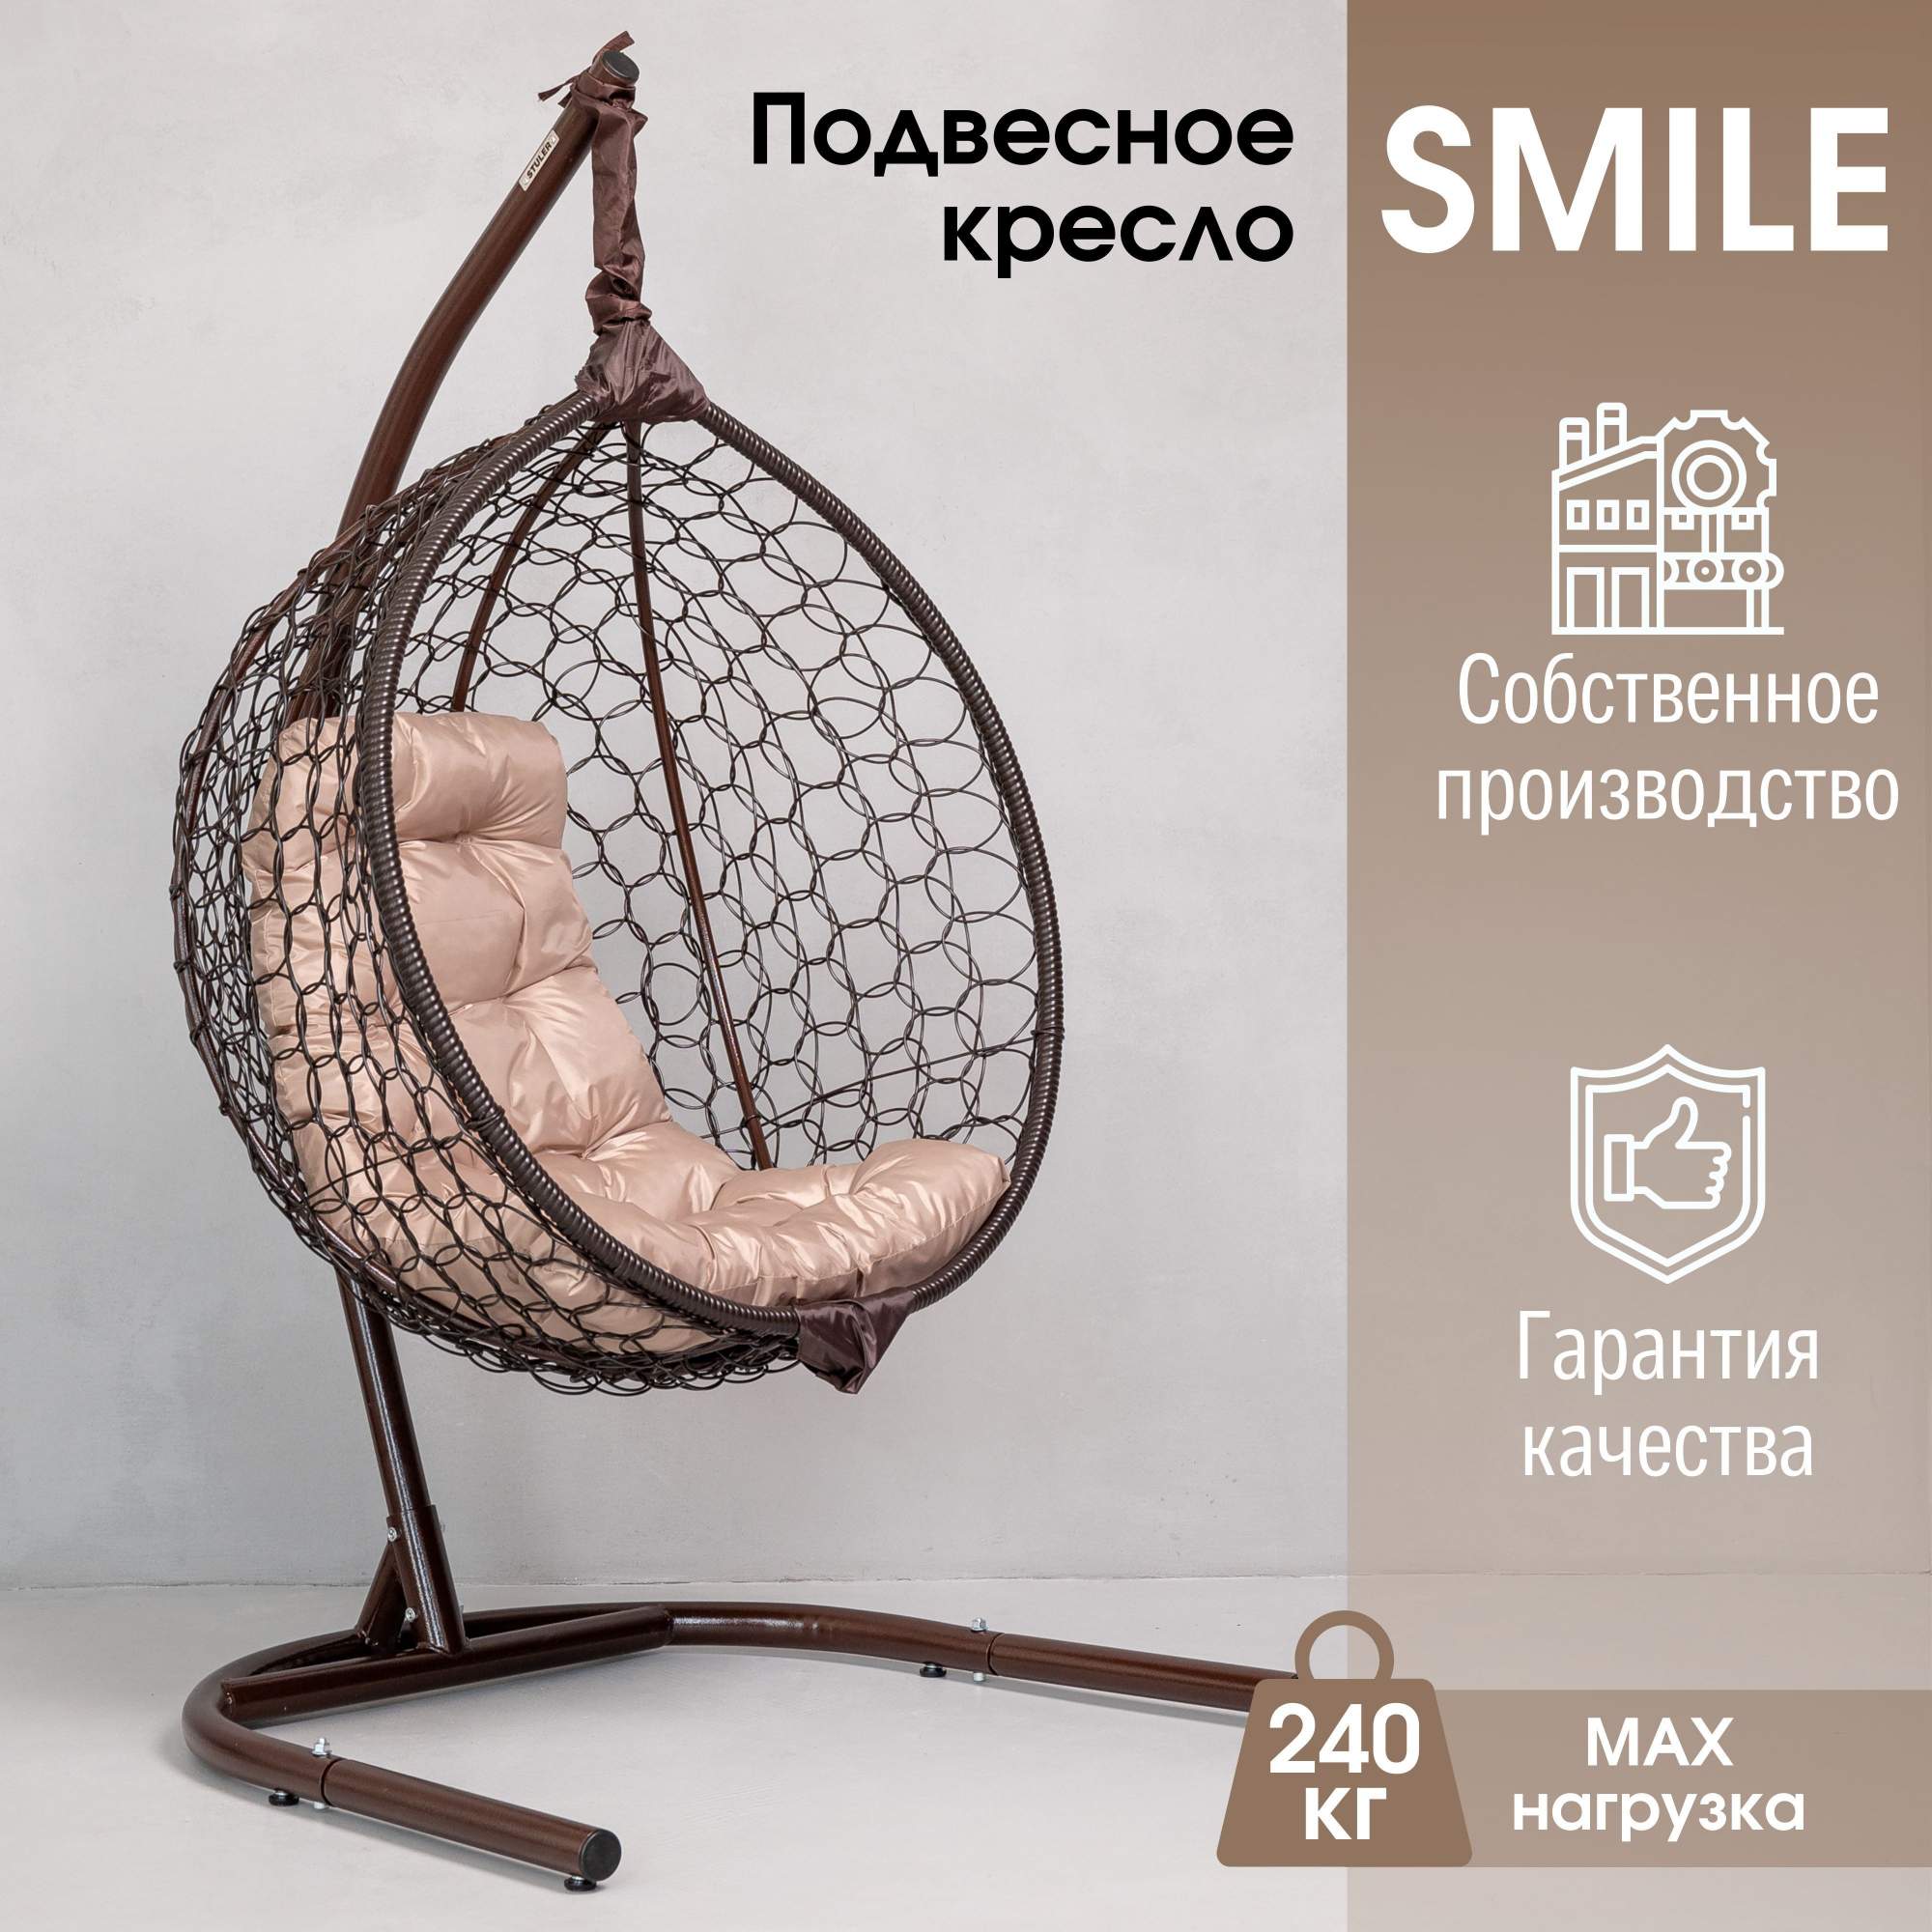 Подвесное кресло коричневое Stuler Smail ажур Ksmar1ur1po01t бежевая подушка - купить в ООО Стулер, цена на Мегамаркет